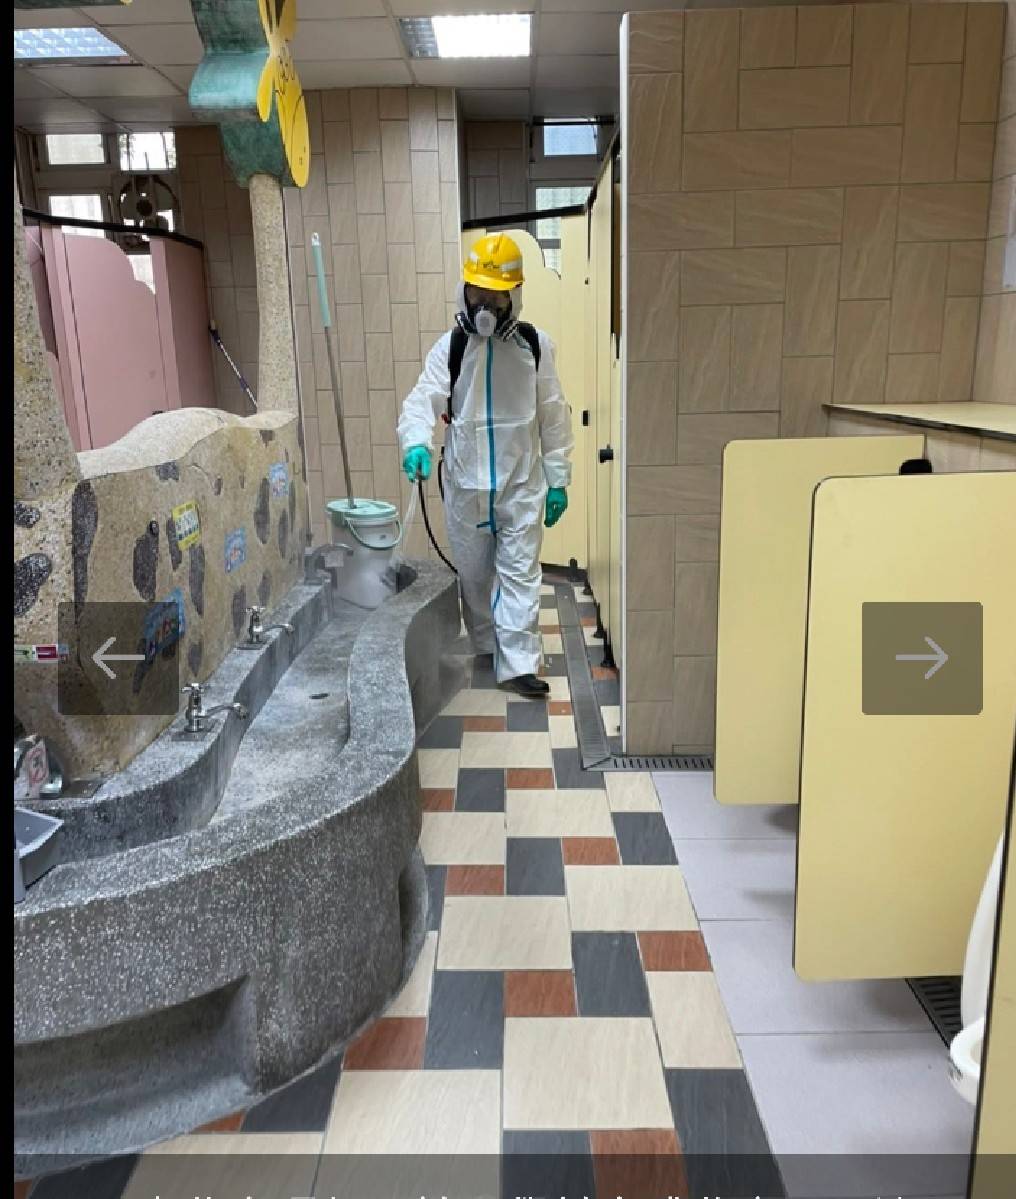 共用的公廁易存留病菌，須定時清消（台北市政府提供）